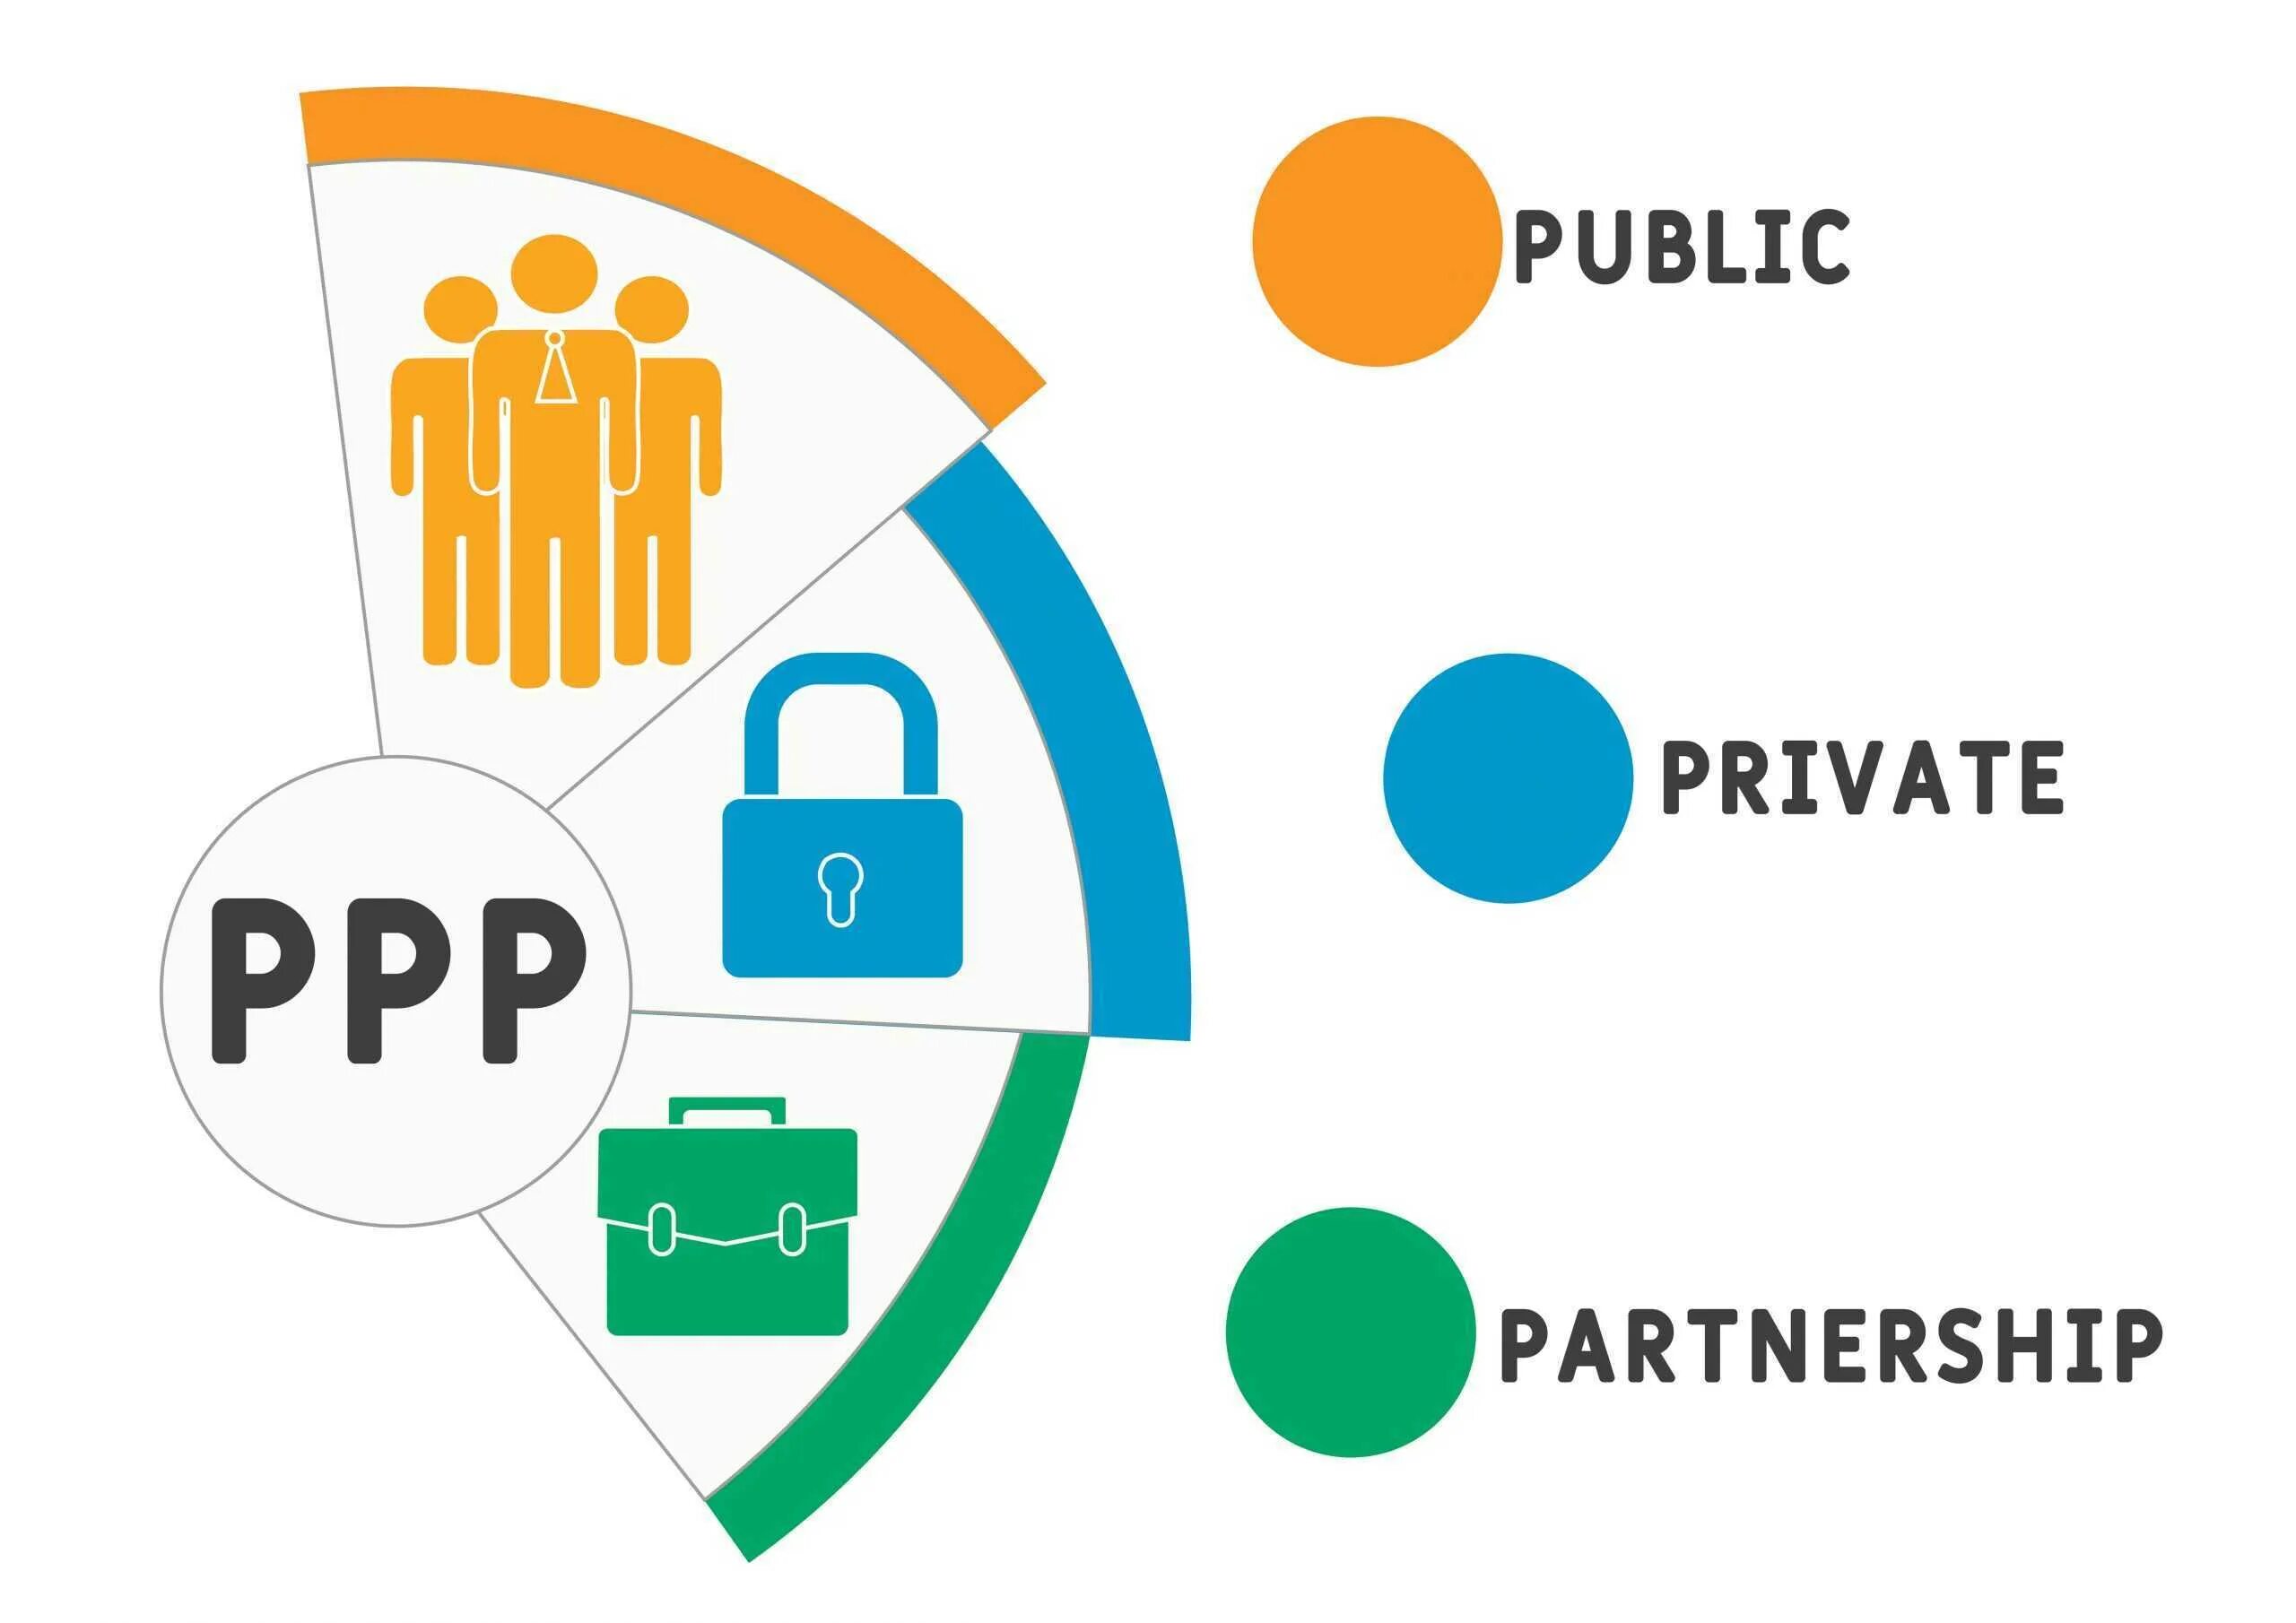 Public public partnership. Public private partnerships. Public private partnership картинки без фона. Государственно-частные партнерства PNG public-private partnerships. Private and public sector.